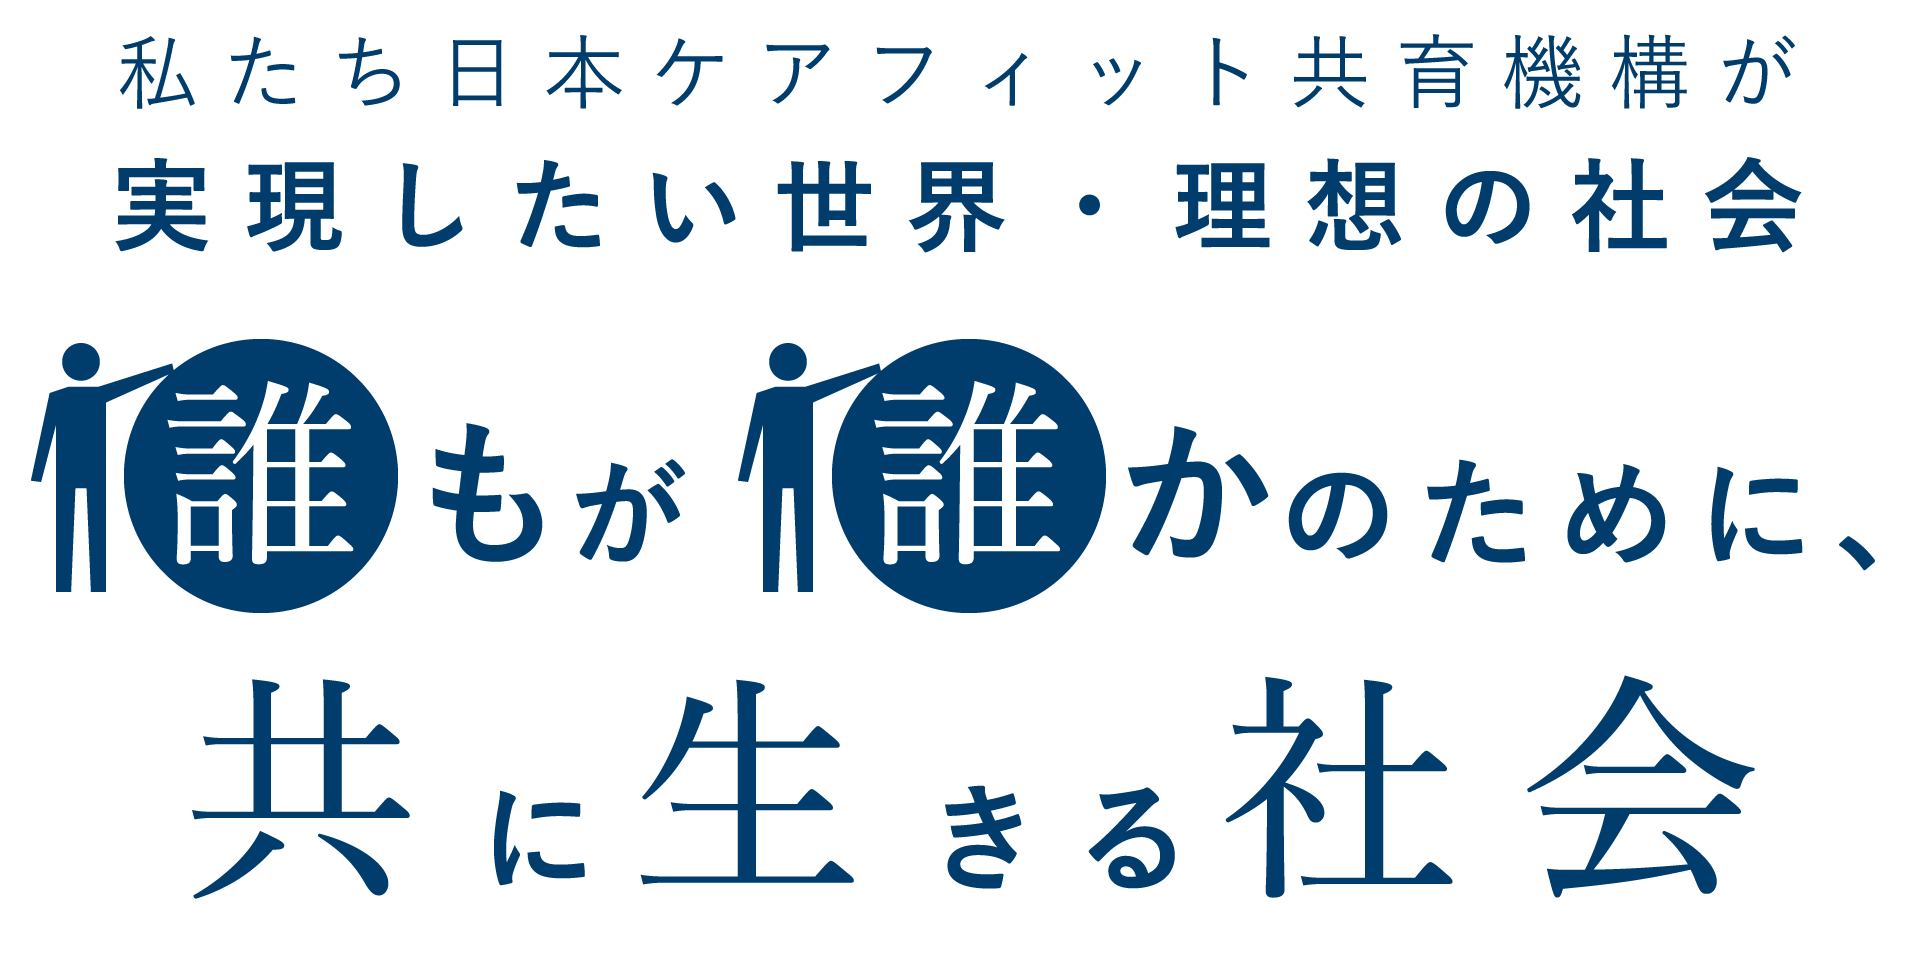 私たち日本ケアフィット共育機構が実現したい世界・理想の社会 誰もが誰かのために、共に生きる社会